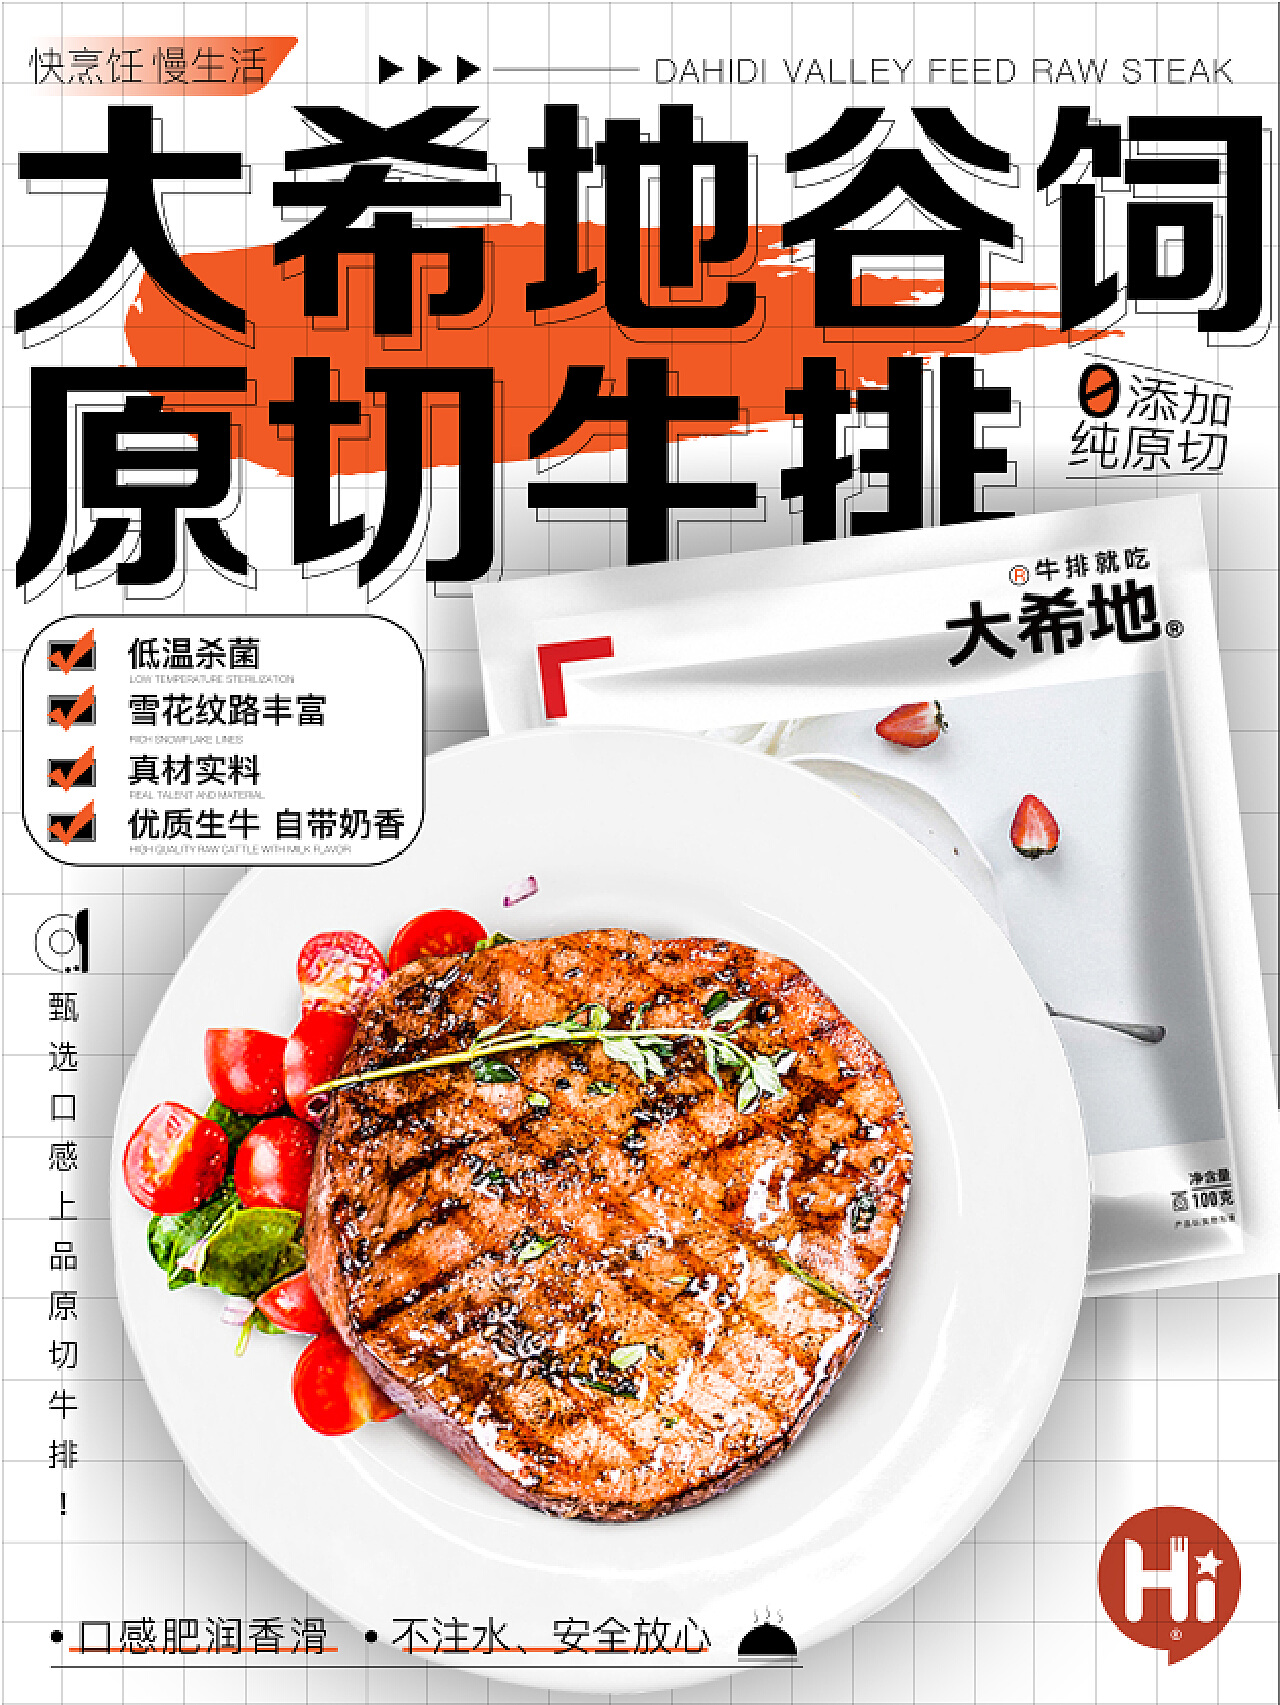 大希地牛排 —5分钟做大餐-中国网海峡频道